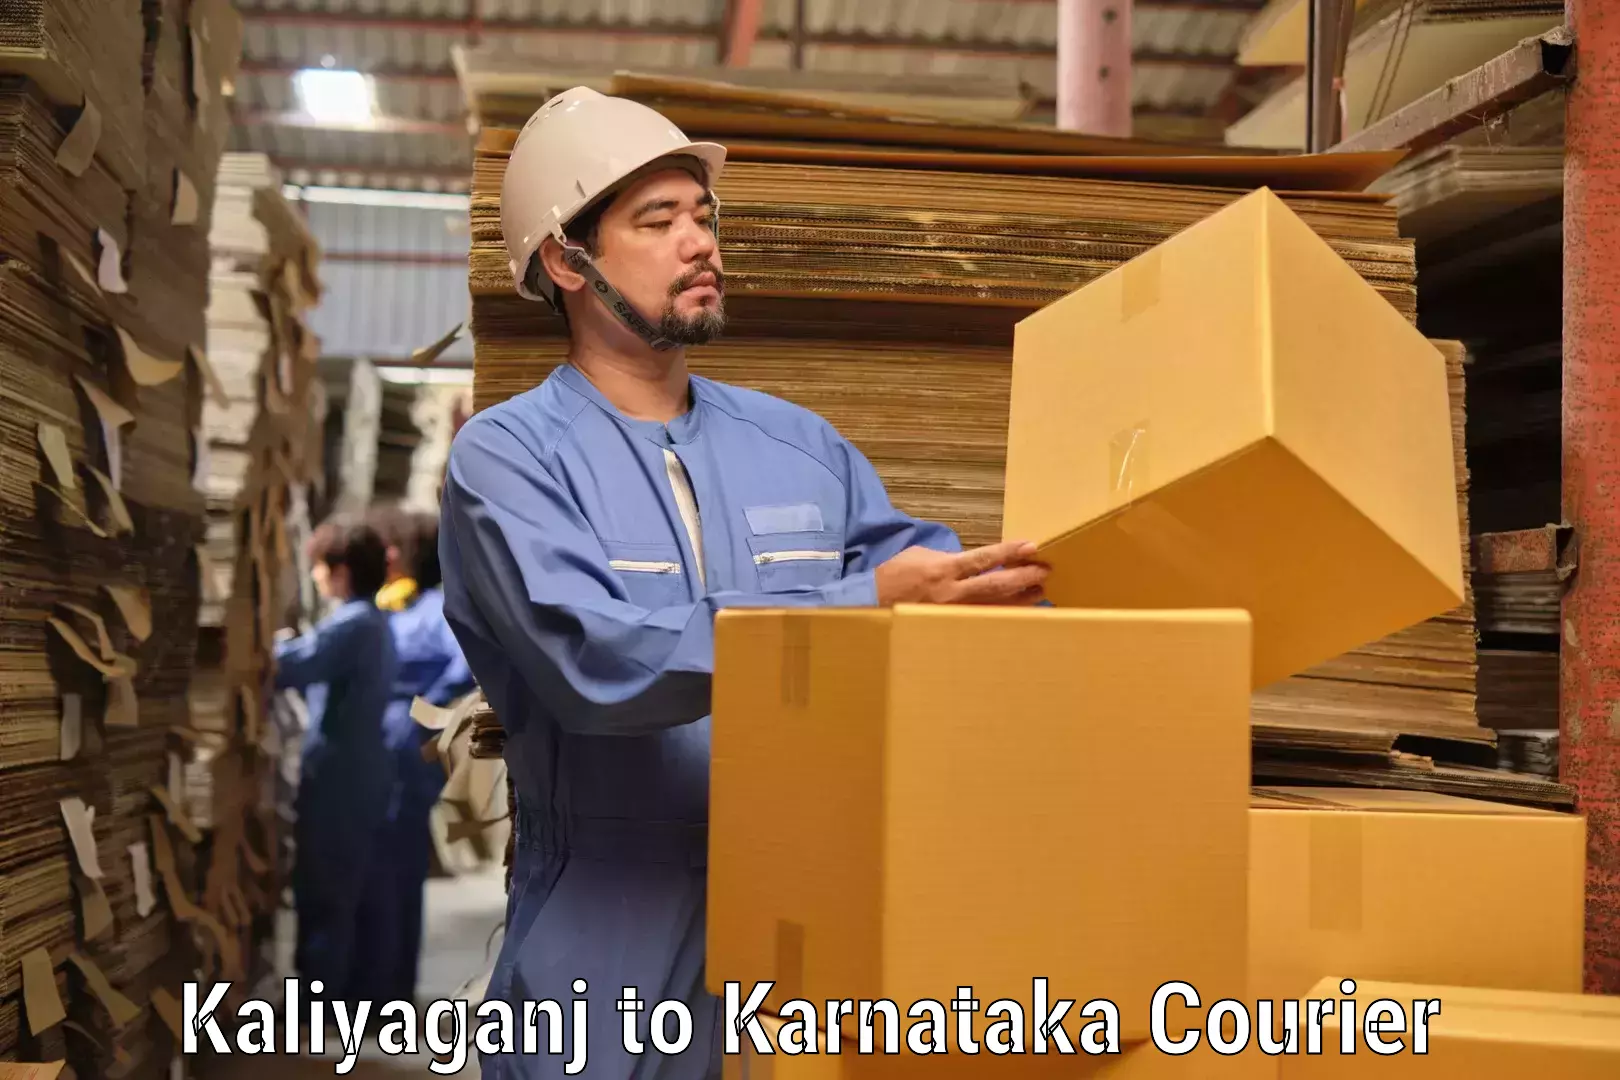 Large-scale shipping solutions Kaliyaganj to Deodurga